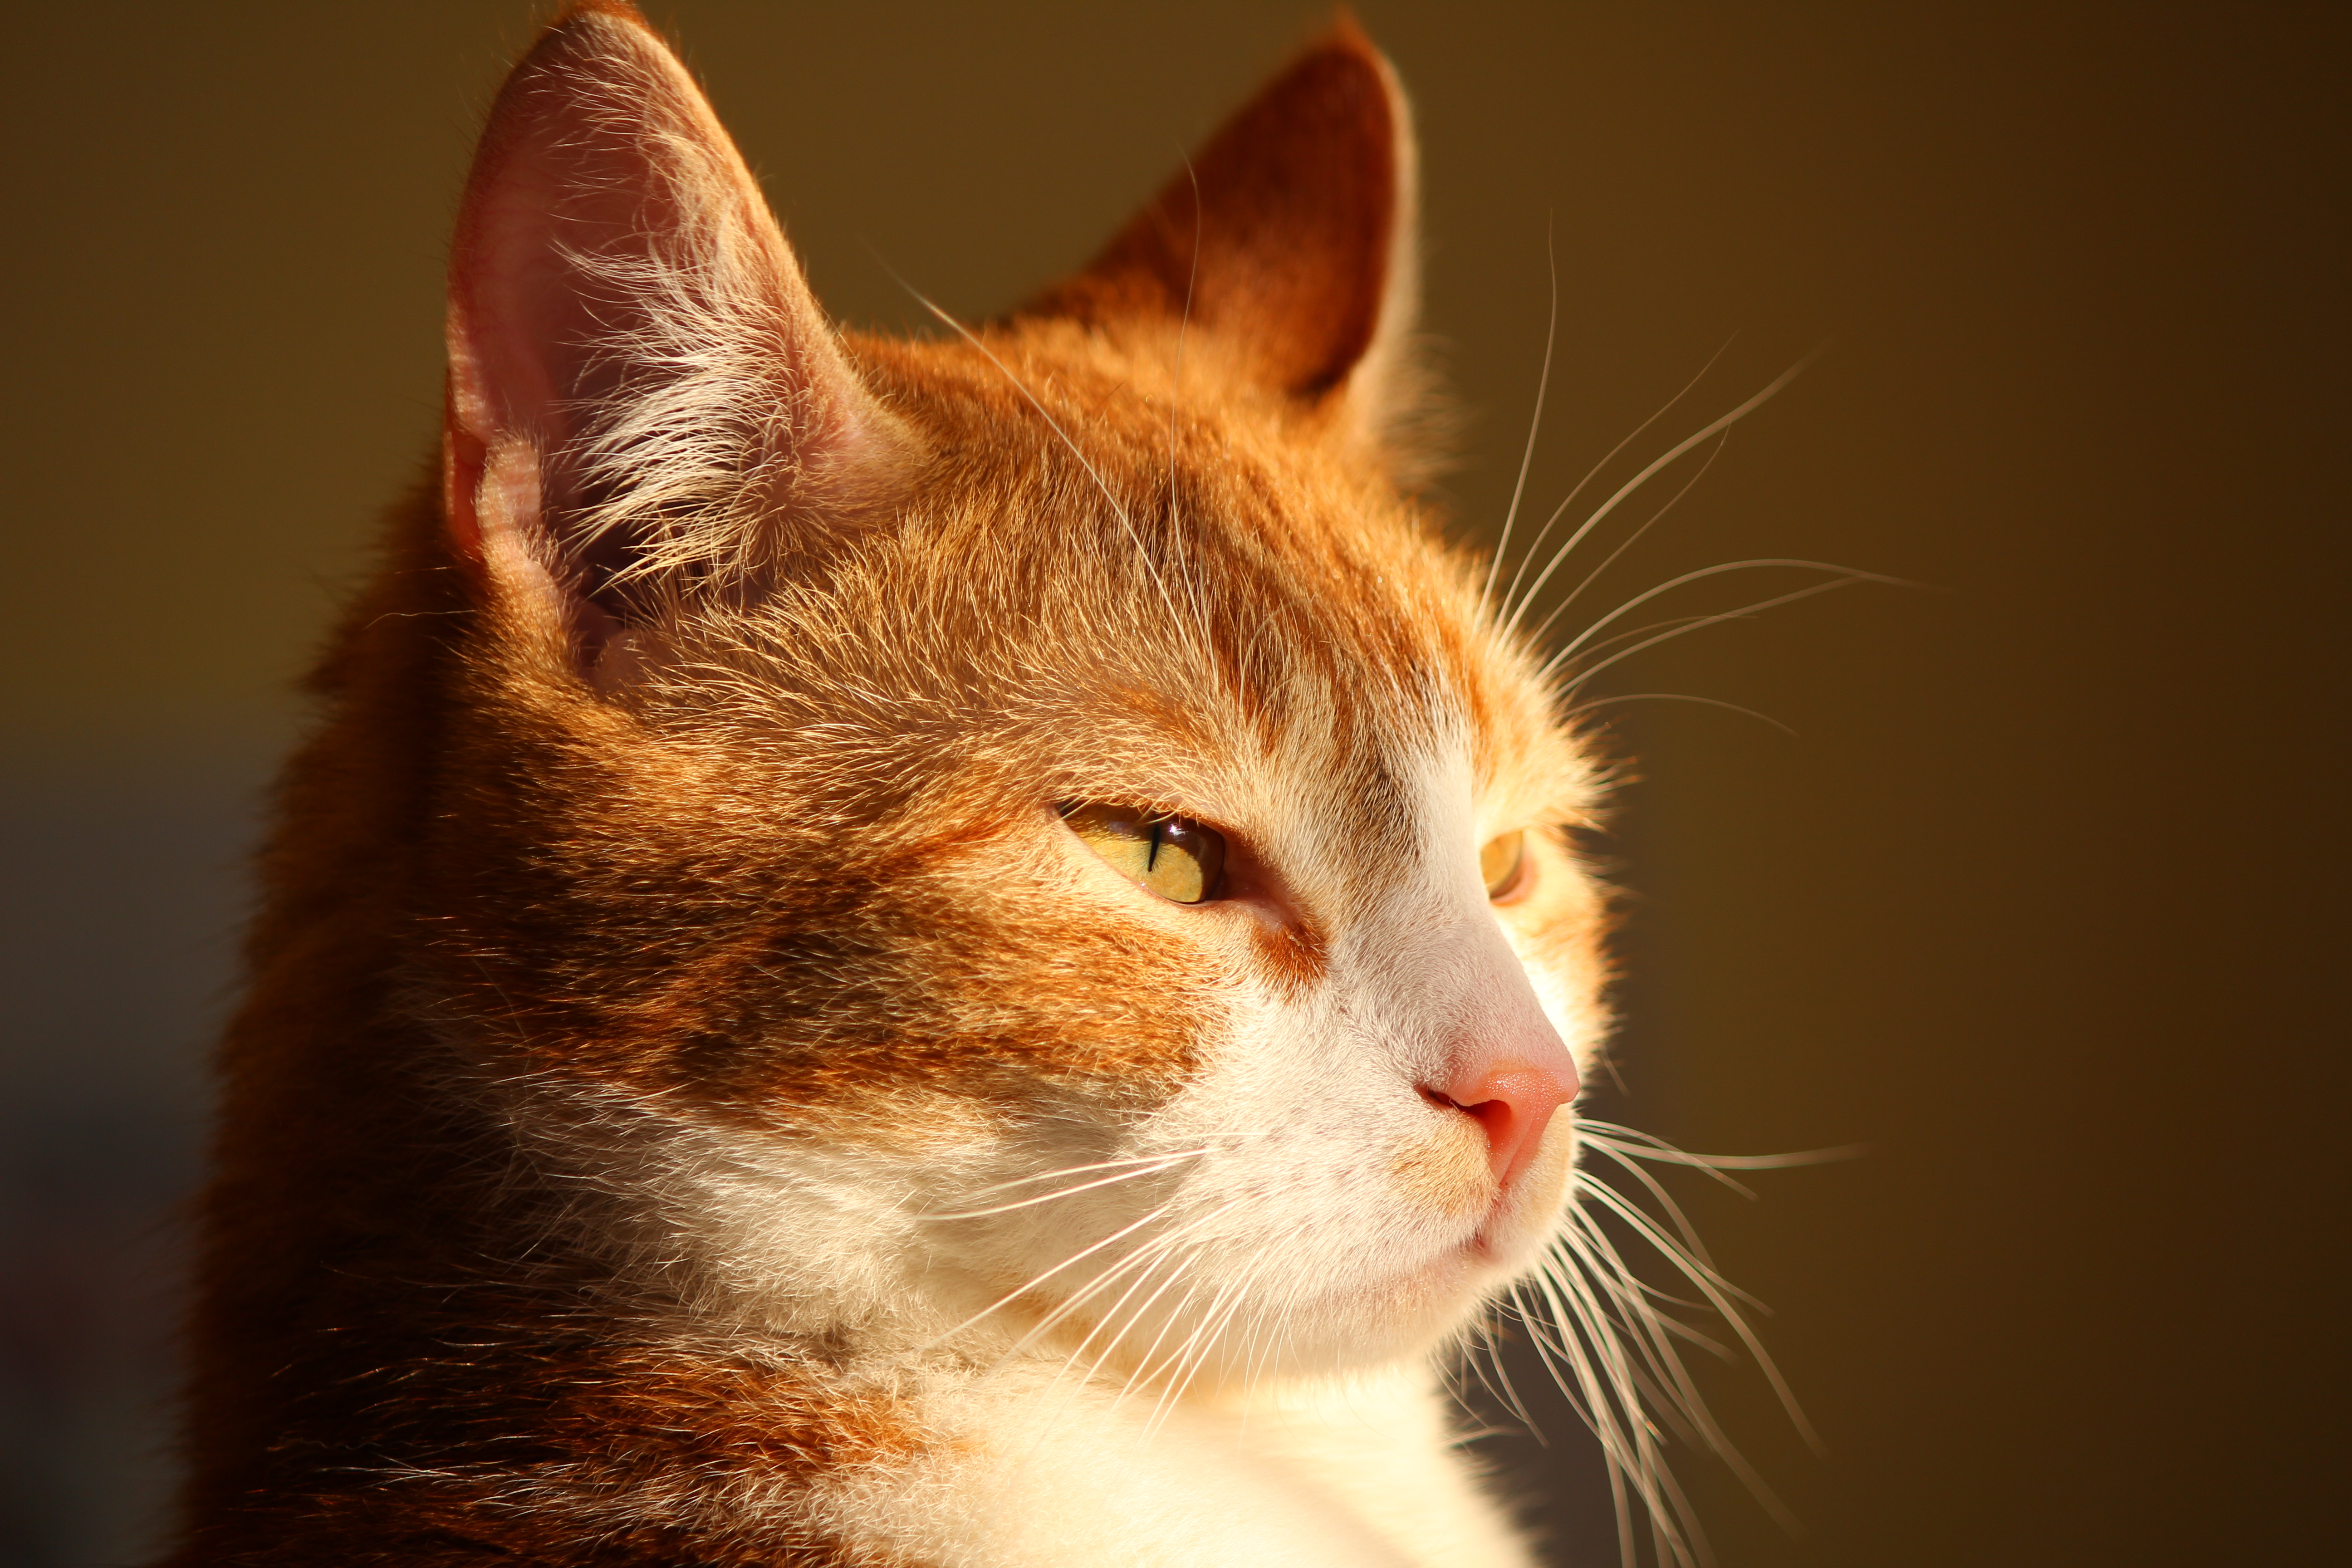 Cat portrait photo